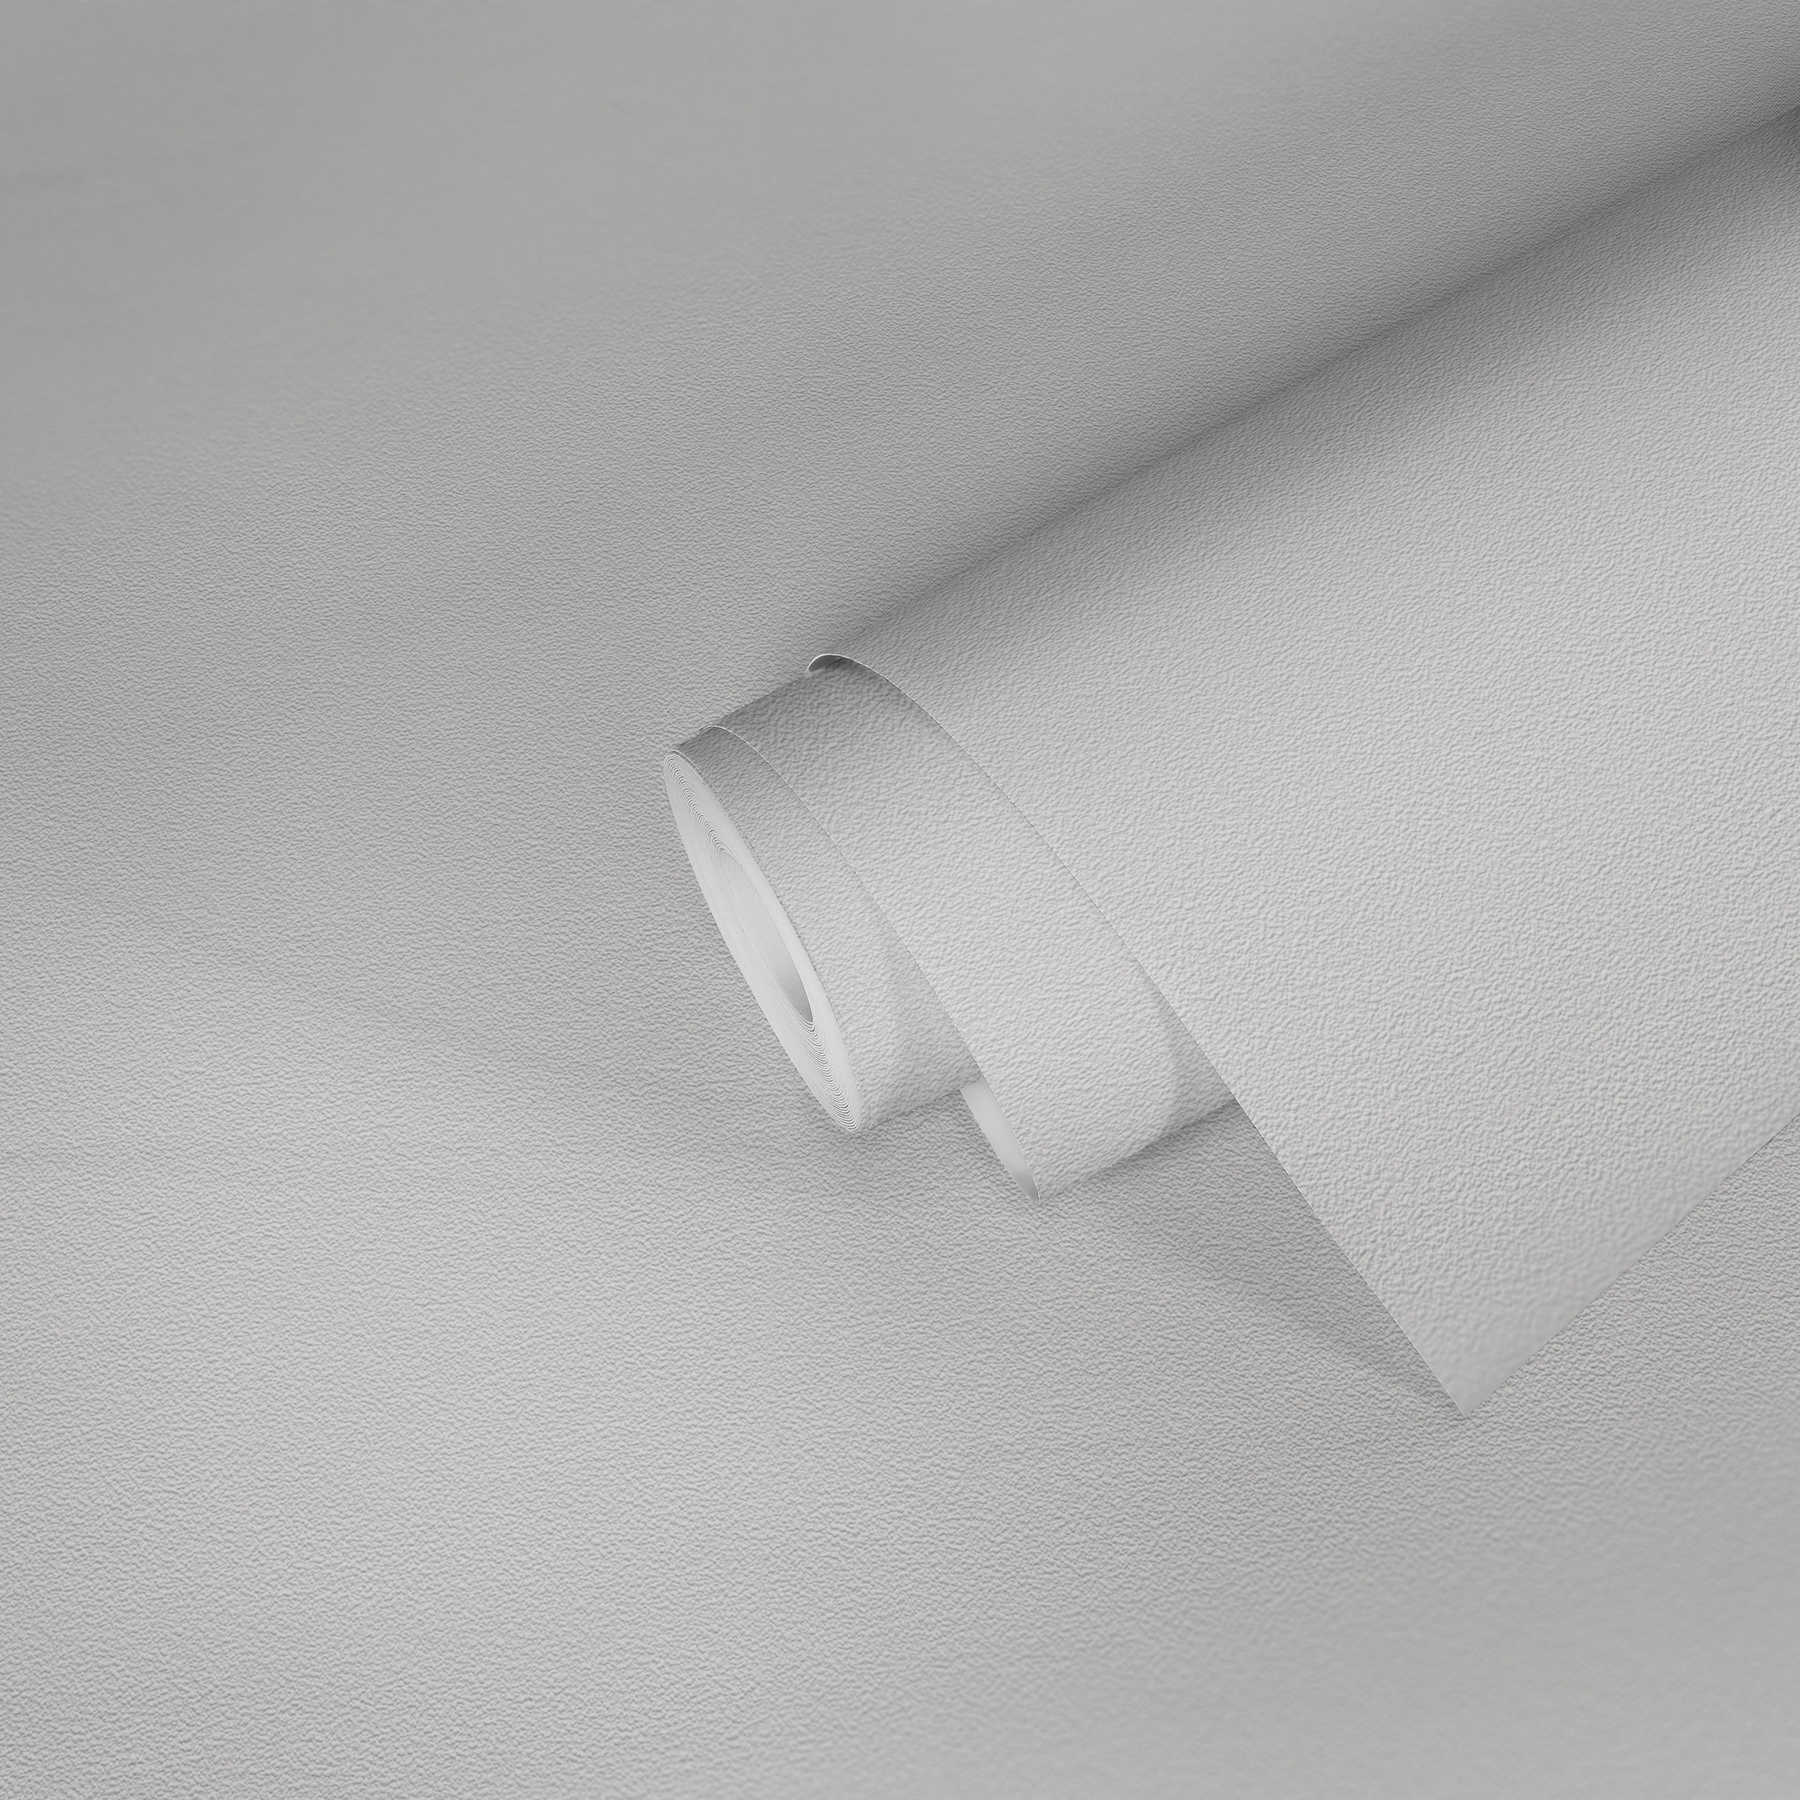             Papier peint blanc avec surface structurée à l'aspect crépi fin
        